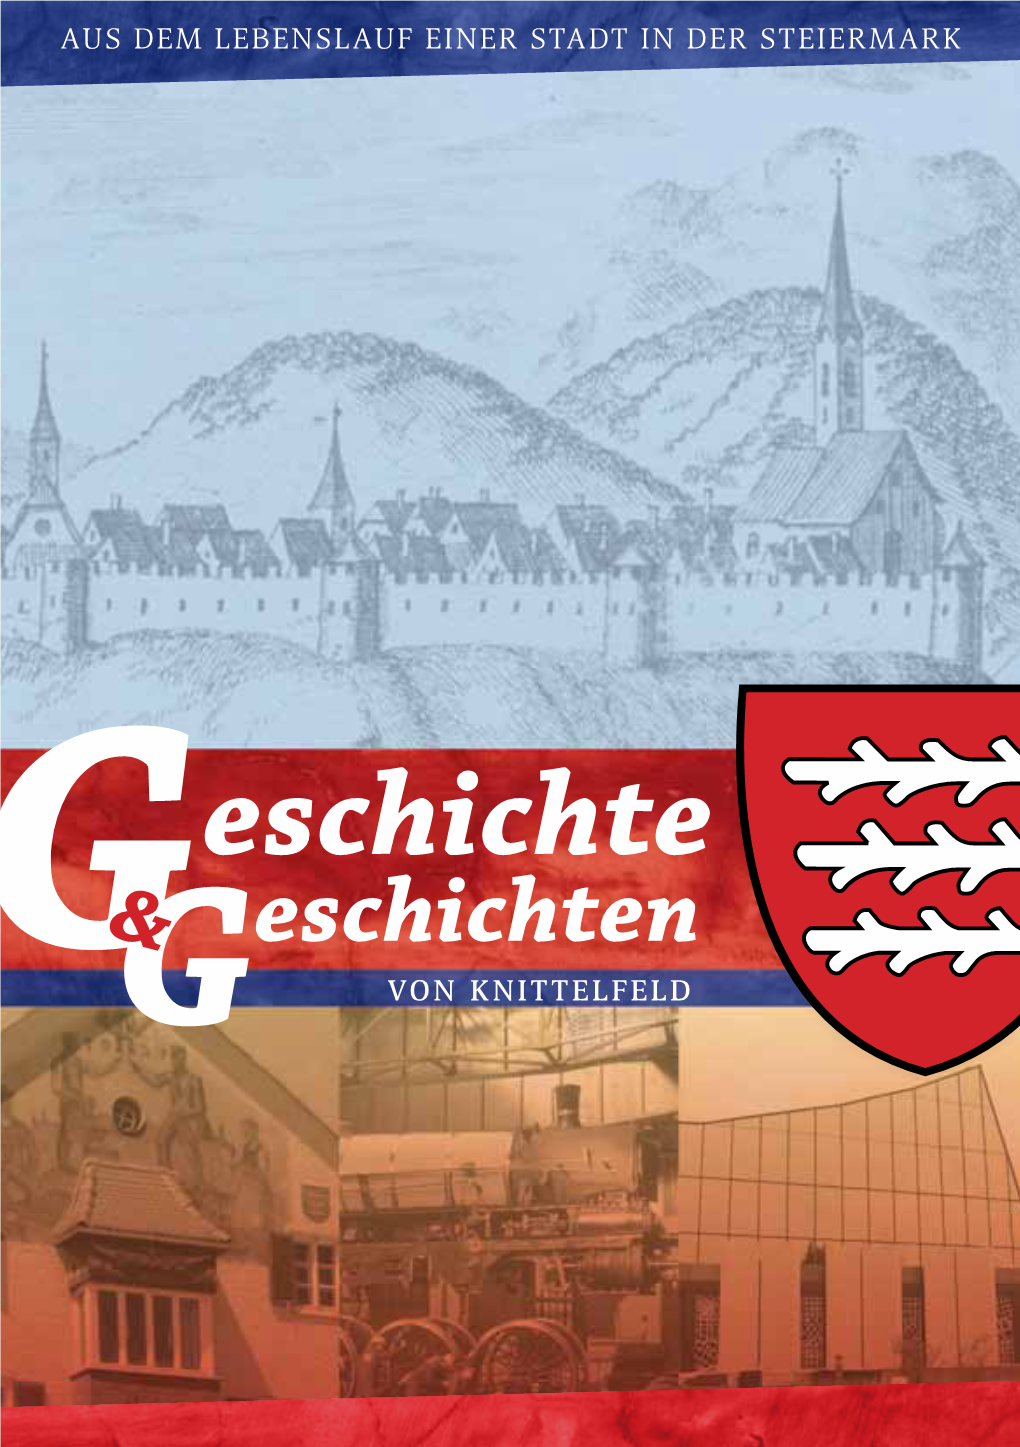 Eschichte & Eschichten G Von Knittelfeld 2